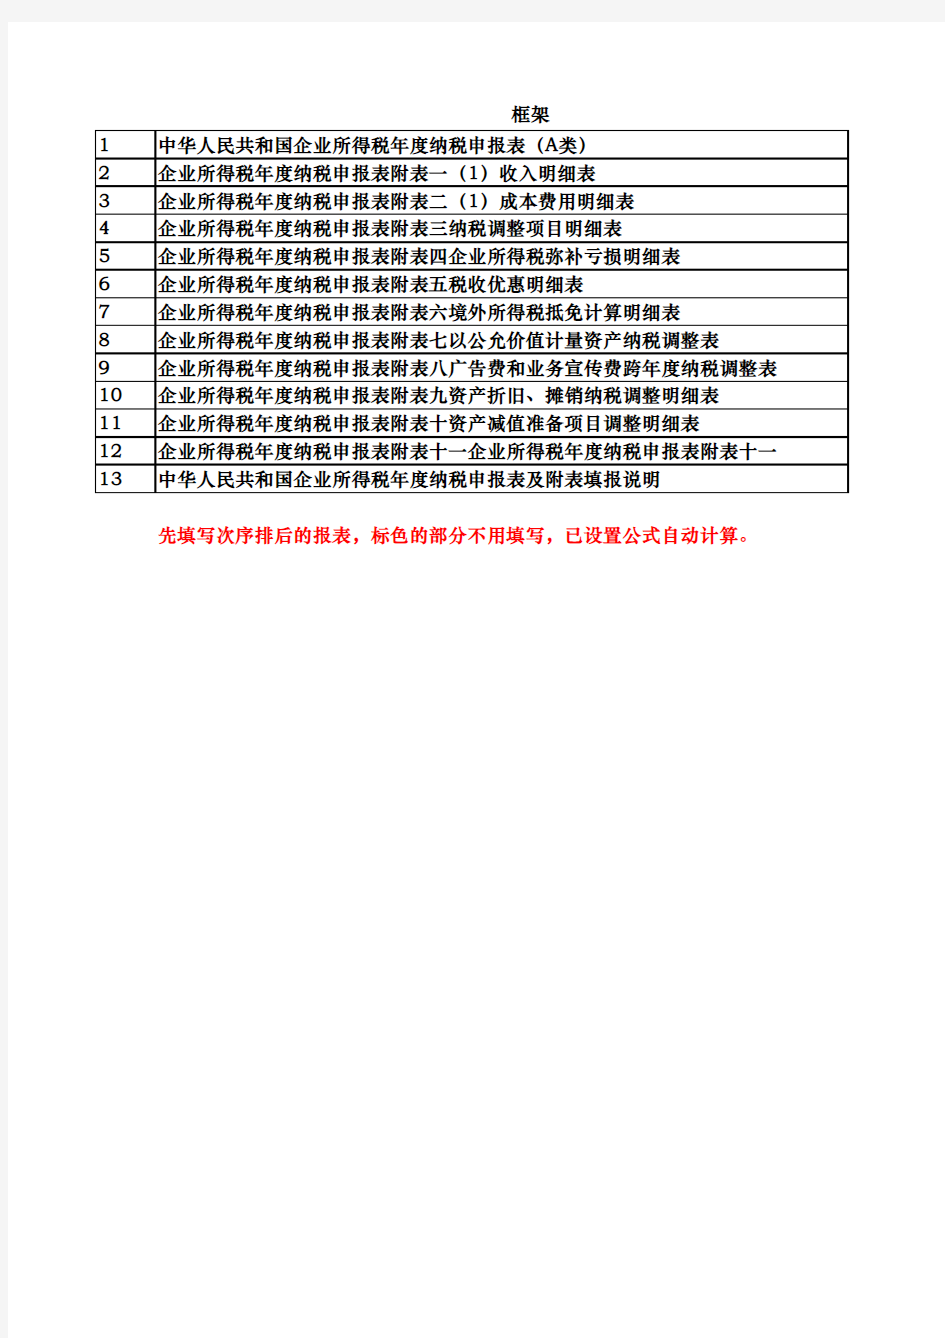 中华人民共和国企业所得税年度纳税申报表(A类)